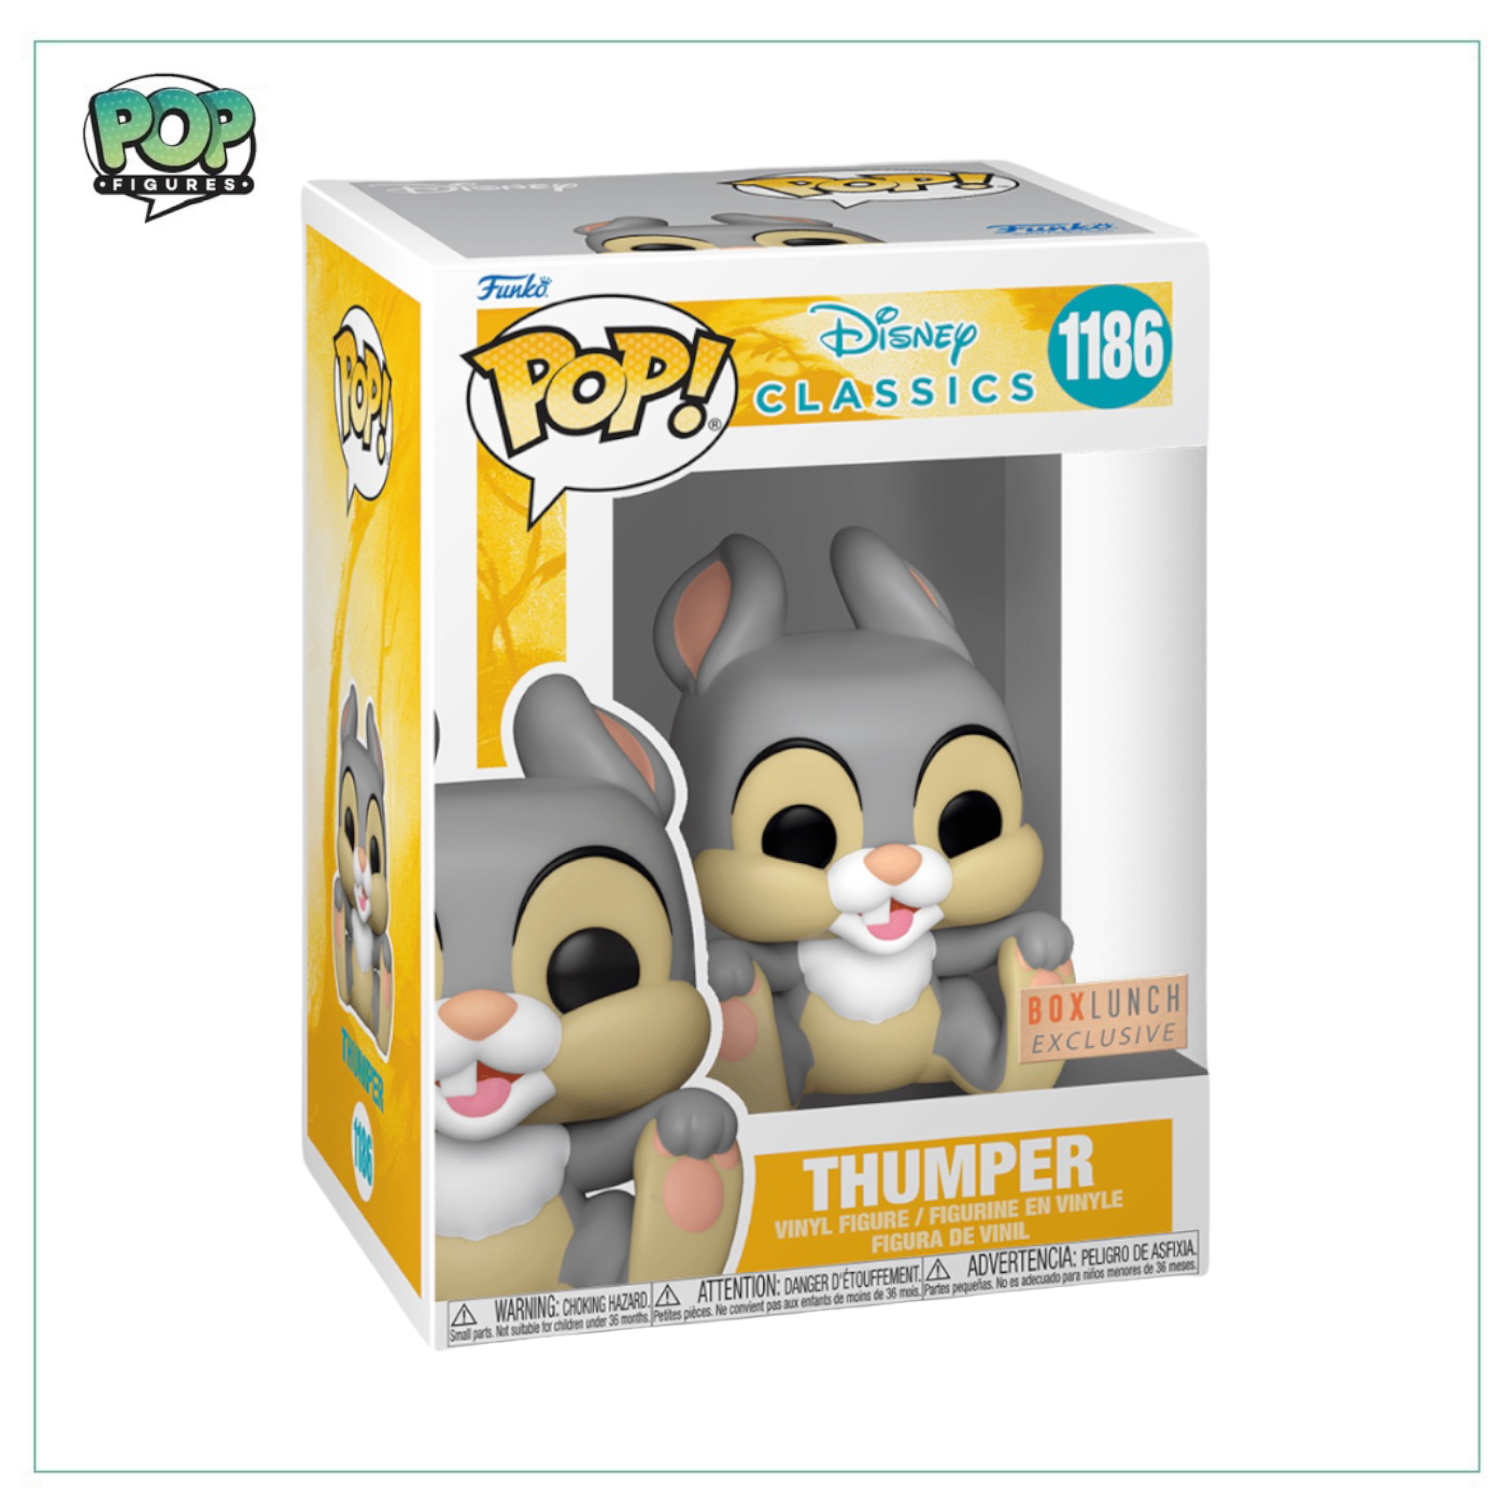 Thumper #1186 Funko Pop! - Disney Classics - Box Lunch Exclusive